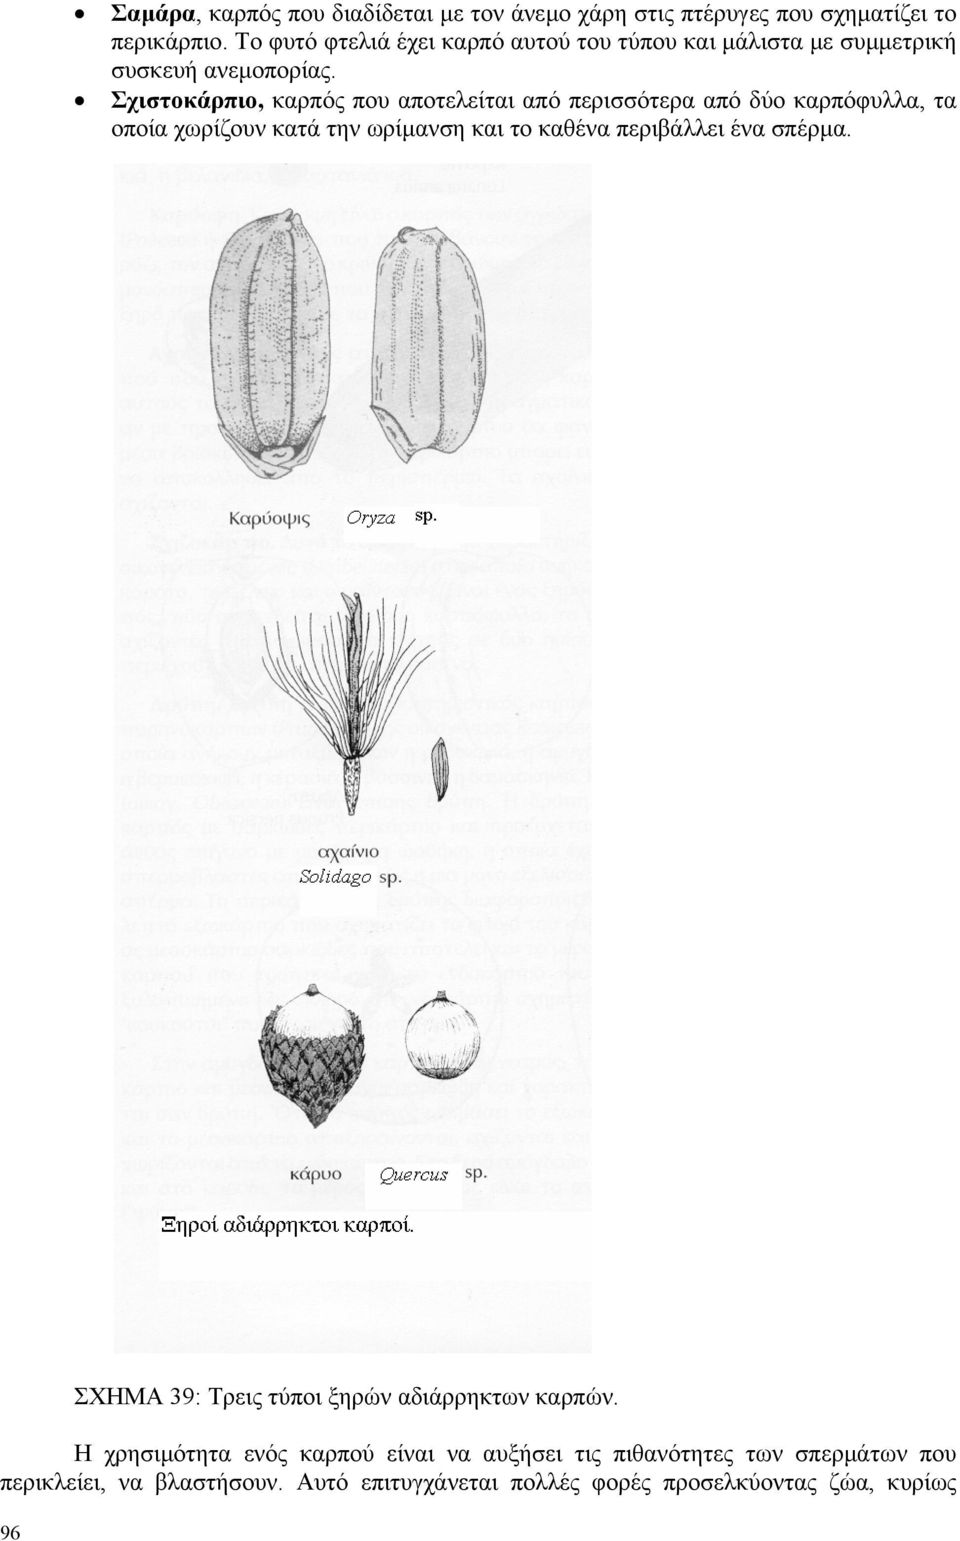 Σχιστοκάρπιο, καρπός που αποτελείται από περισσότερα από δύο καρπόφυλλα, τα οποία χωρίζουν κατά την ωρίµανση και το καθένα περιβάλλει